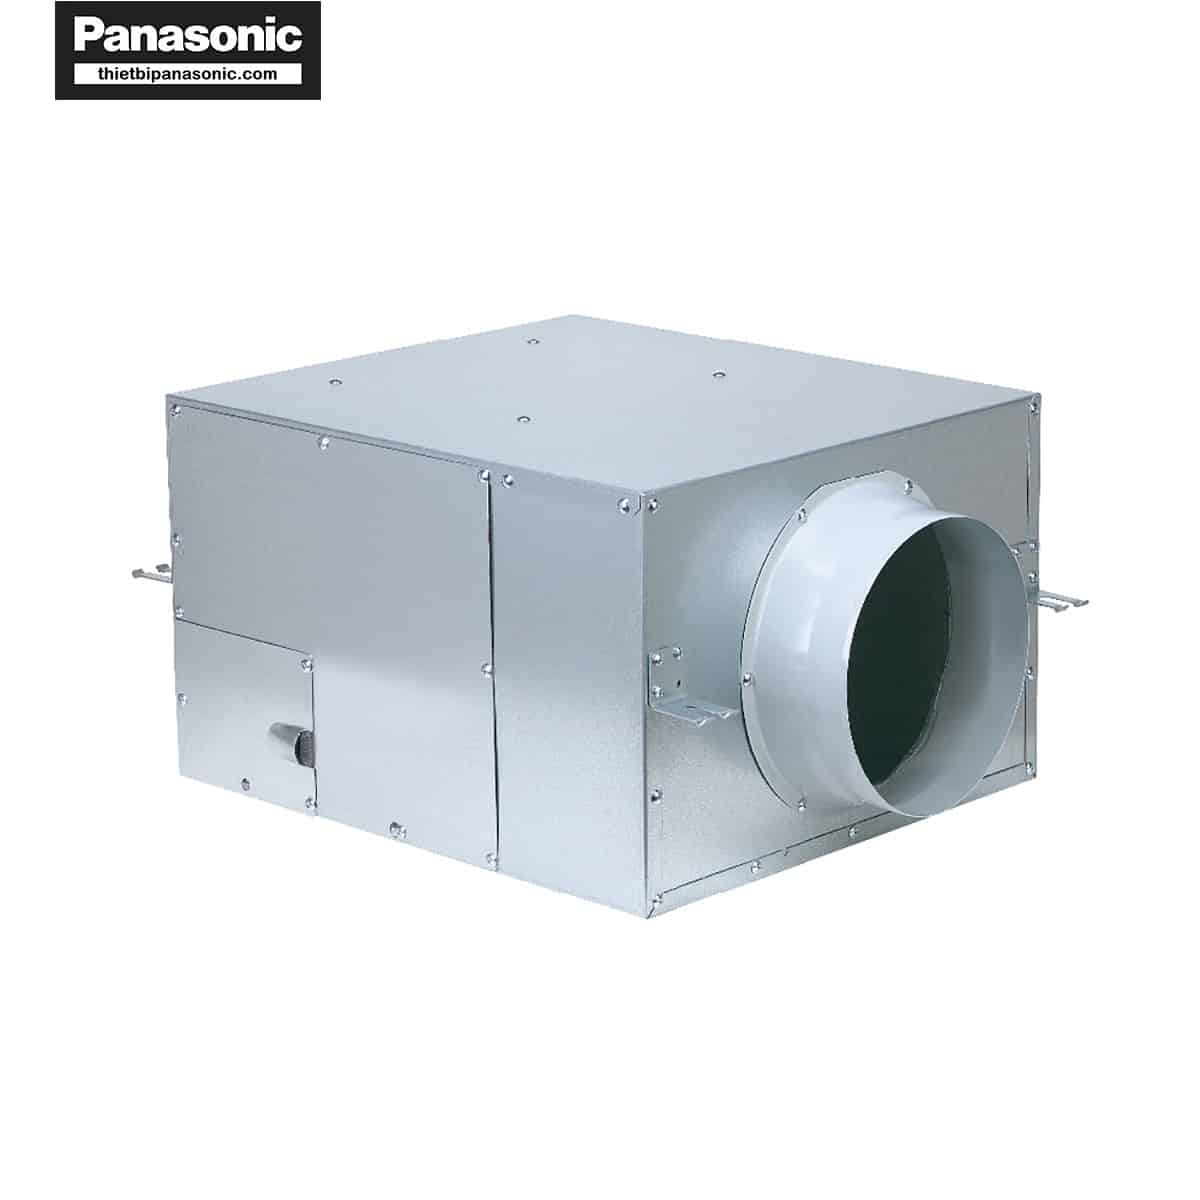 Quạt hút Cabinet Panasonic FV-23NL3 có thiết kế vuông vức, cứng cáp nhờ làm từ vật liệu thép mạ kẽm